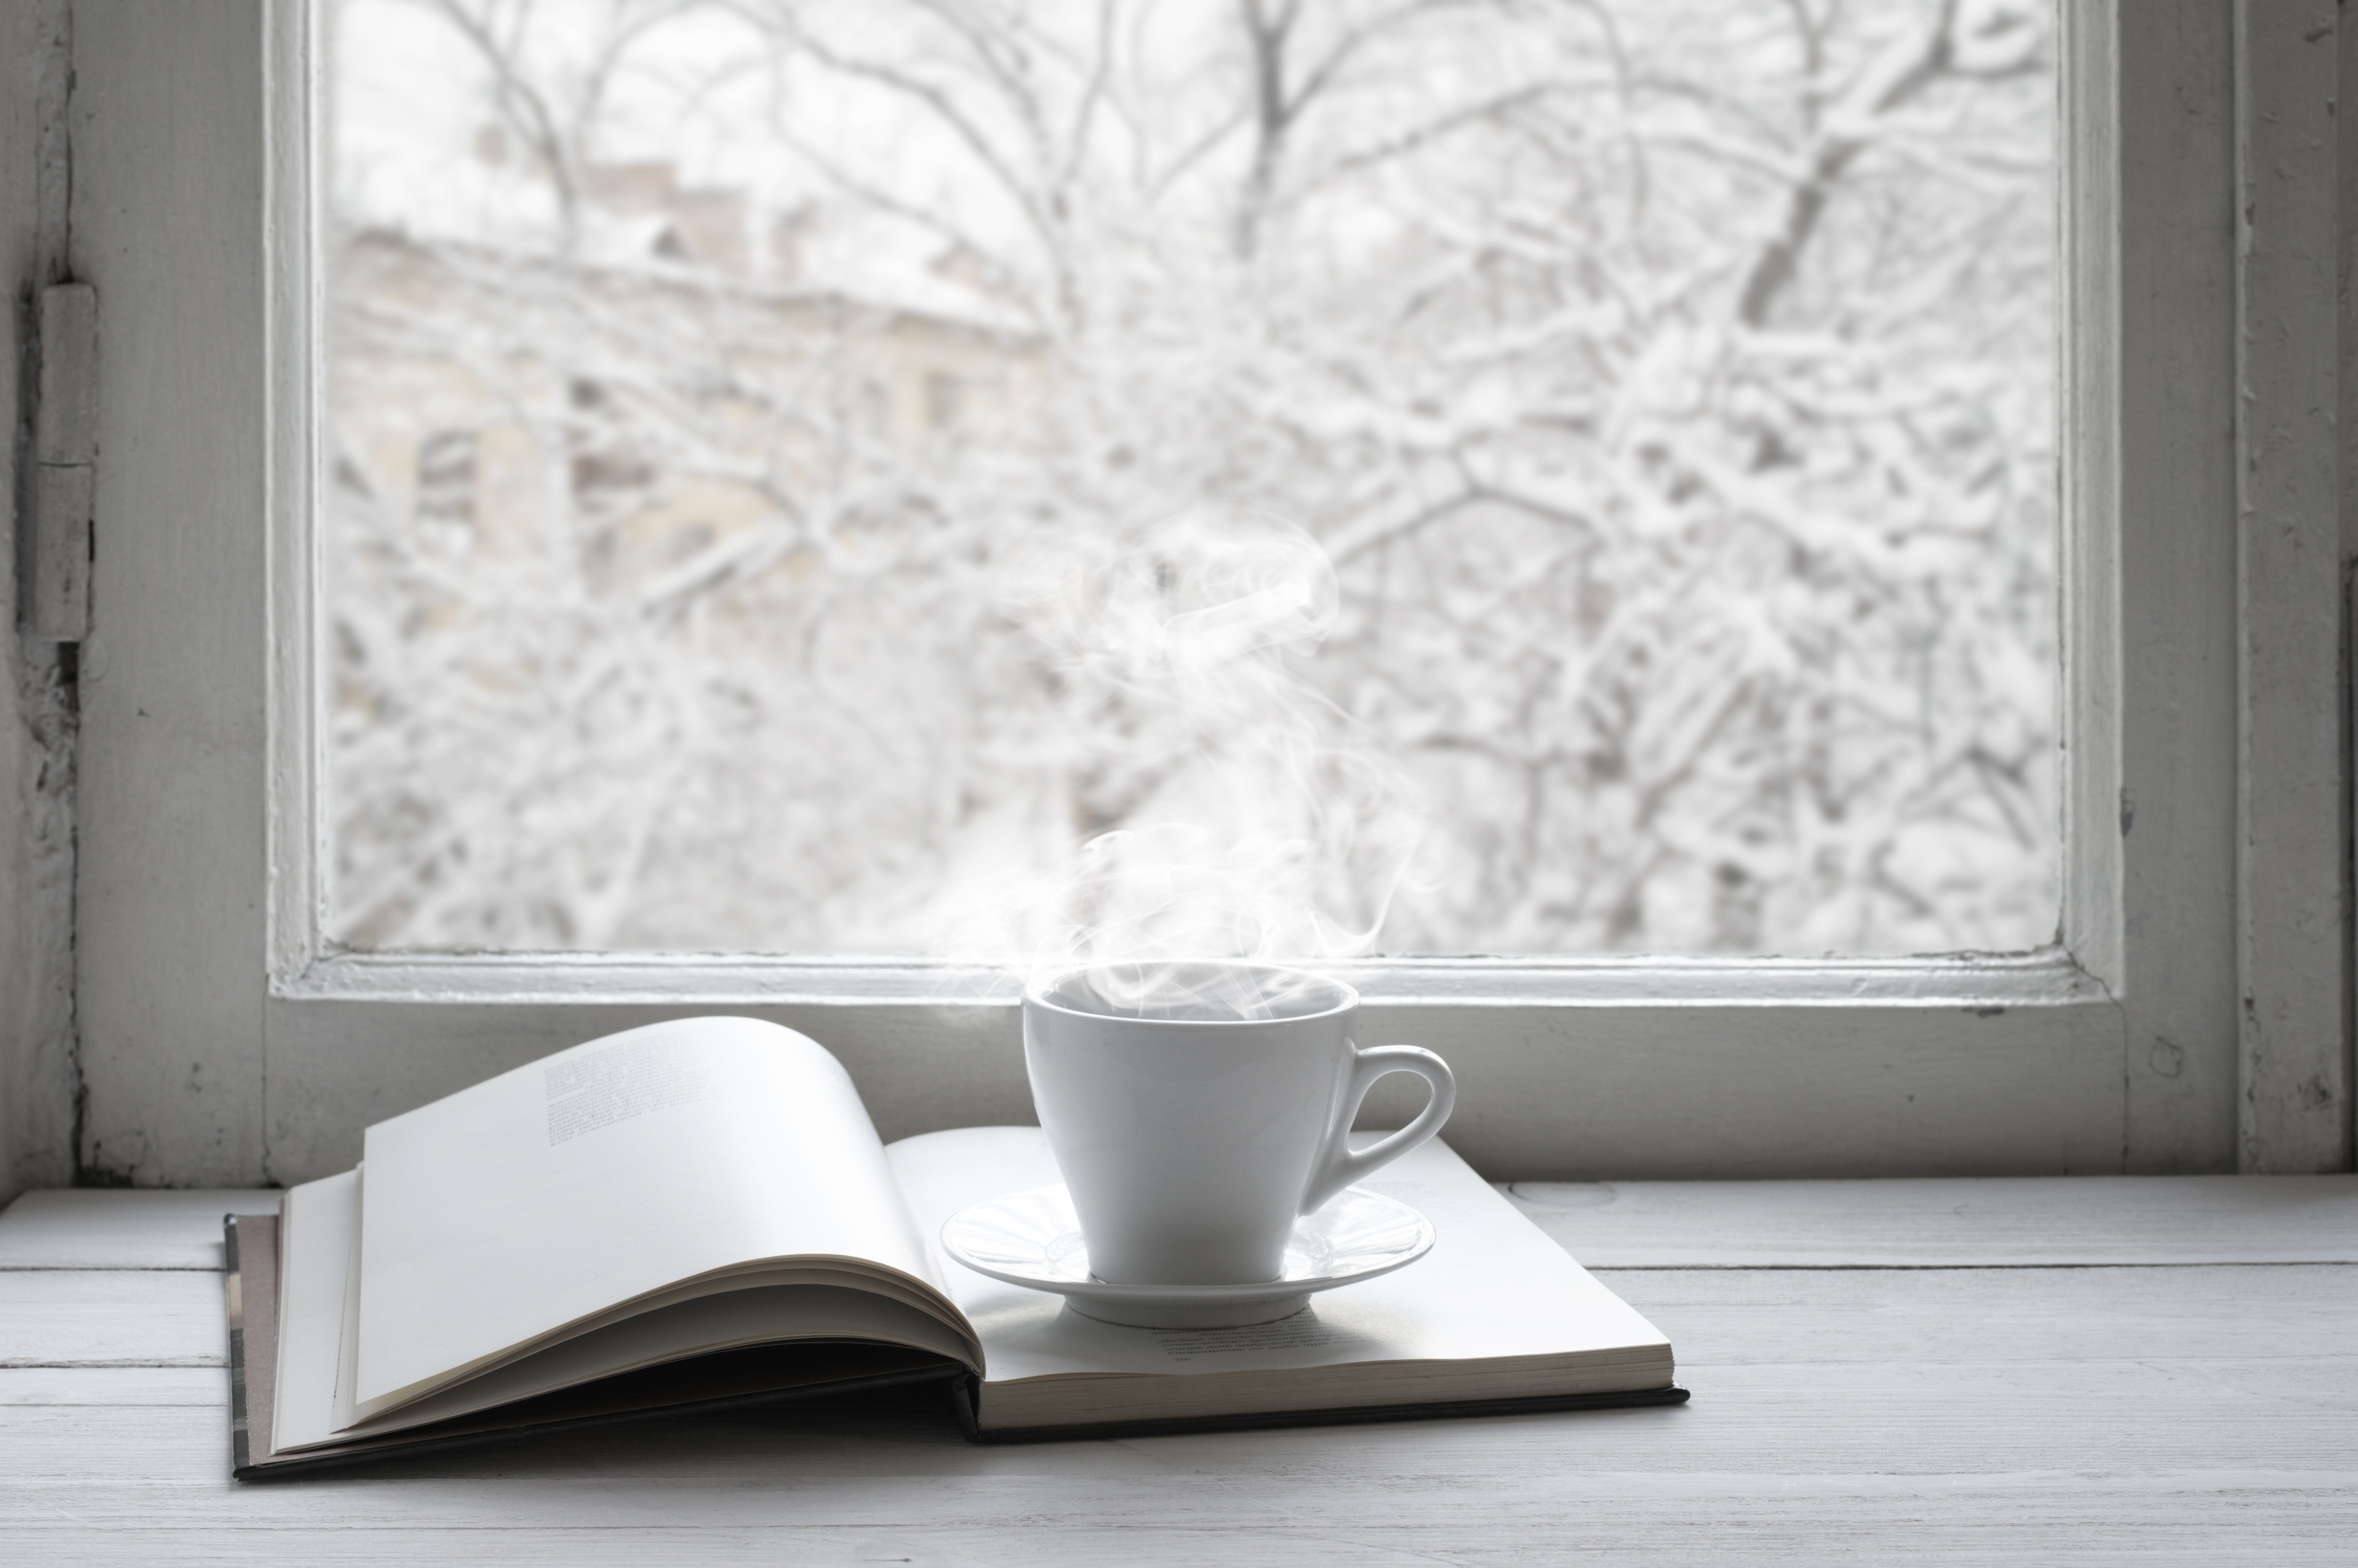 Стучит подоконник. Зимнее окно. Зима за окном. Заснеженный подоконник. Кофе на подоконнике.